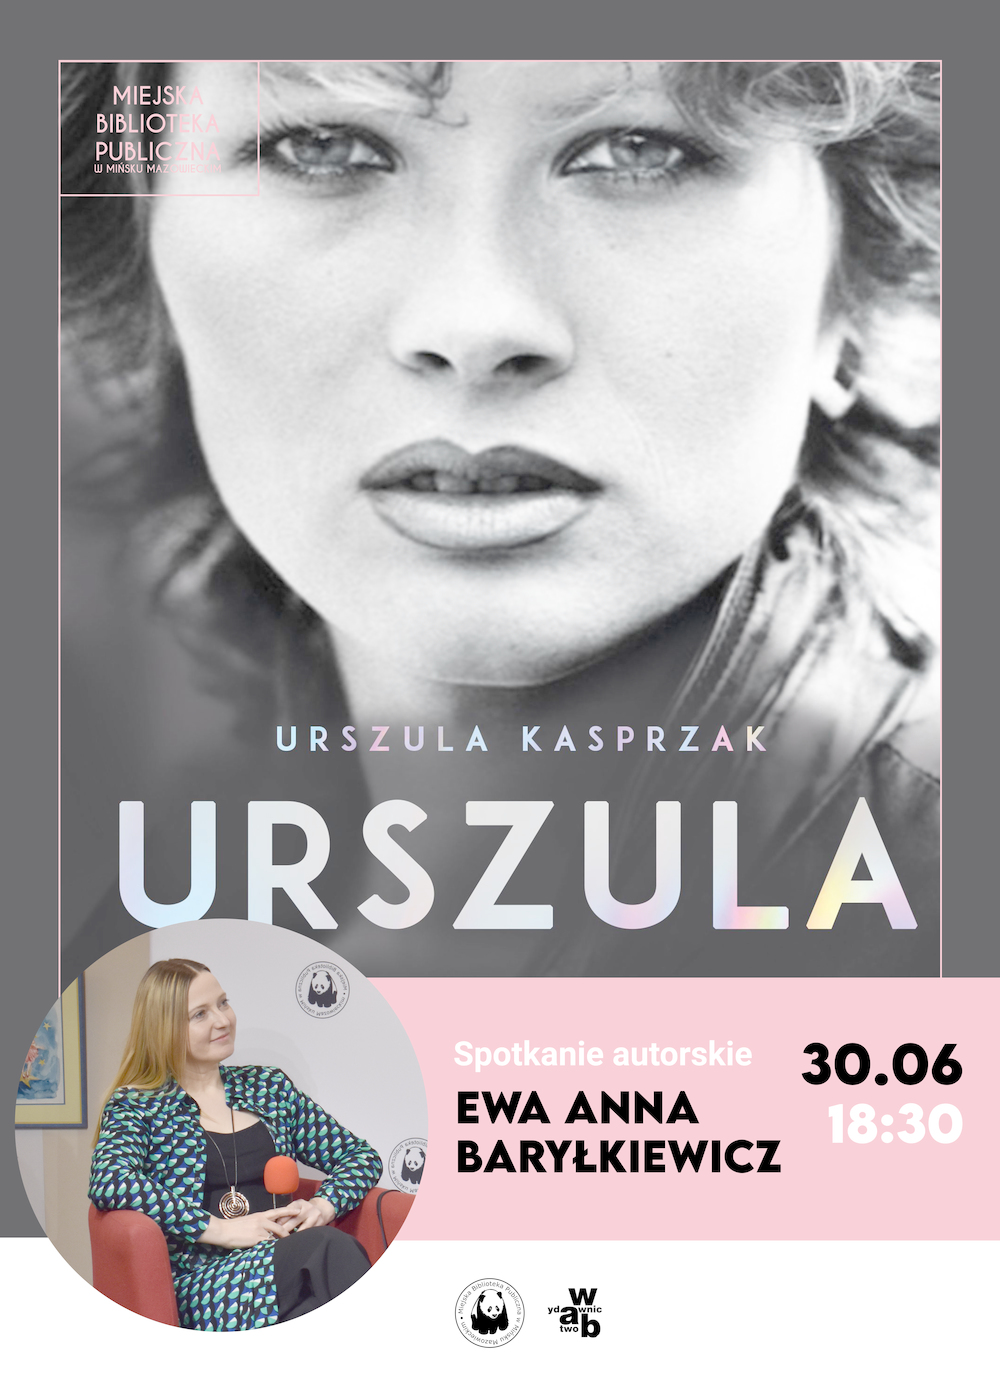 Spotkanie autorskie z Ewą Anną Baryłkiewicz i promocja książki "Urszula"